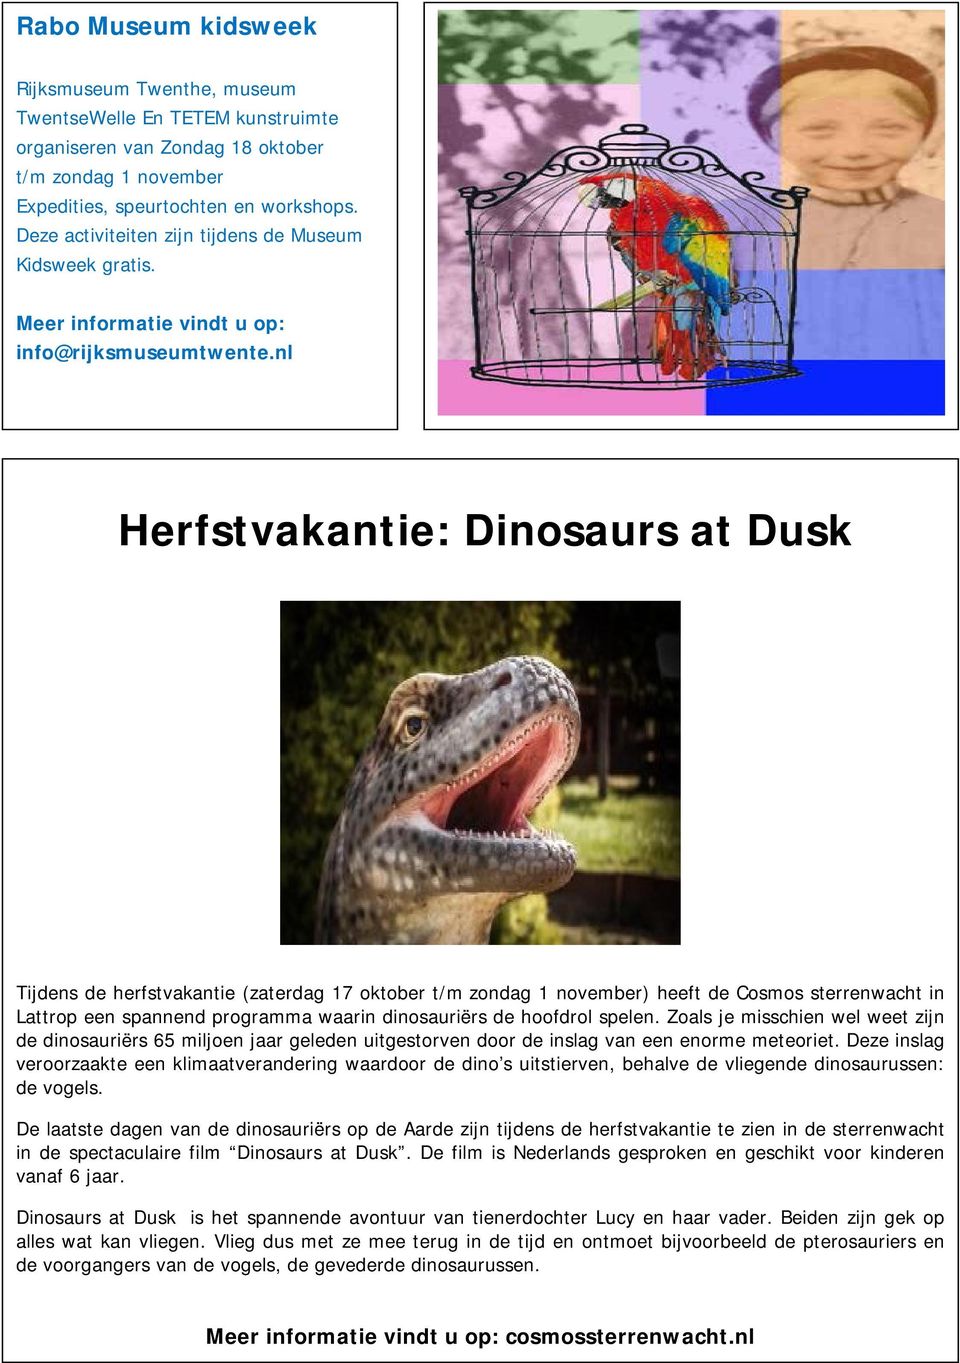 nl Herfstvakantie: Dinosaurs at Dusk Tijdens de herfstvakantie (zaterdag 17 oktober t/m zondag 1 november) heeft de Cosmos sterrenwacht in Lattrop een spannend programma waarin dinosauriërs de